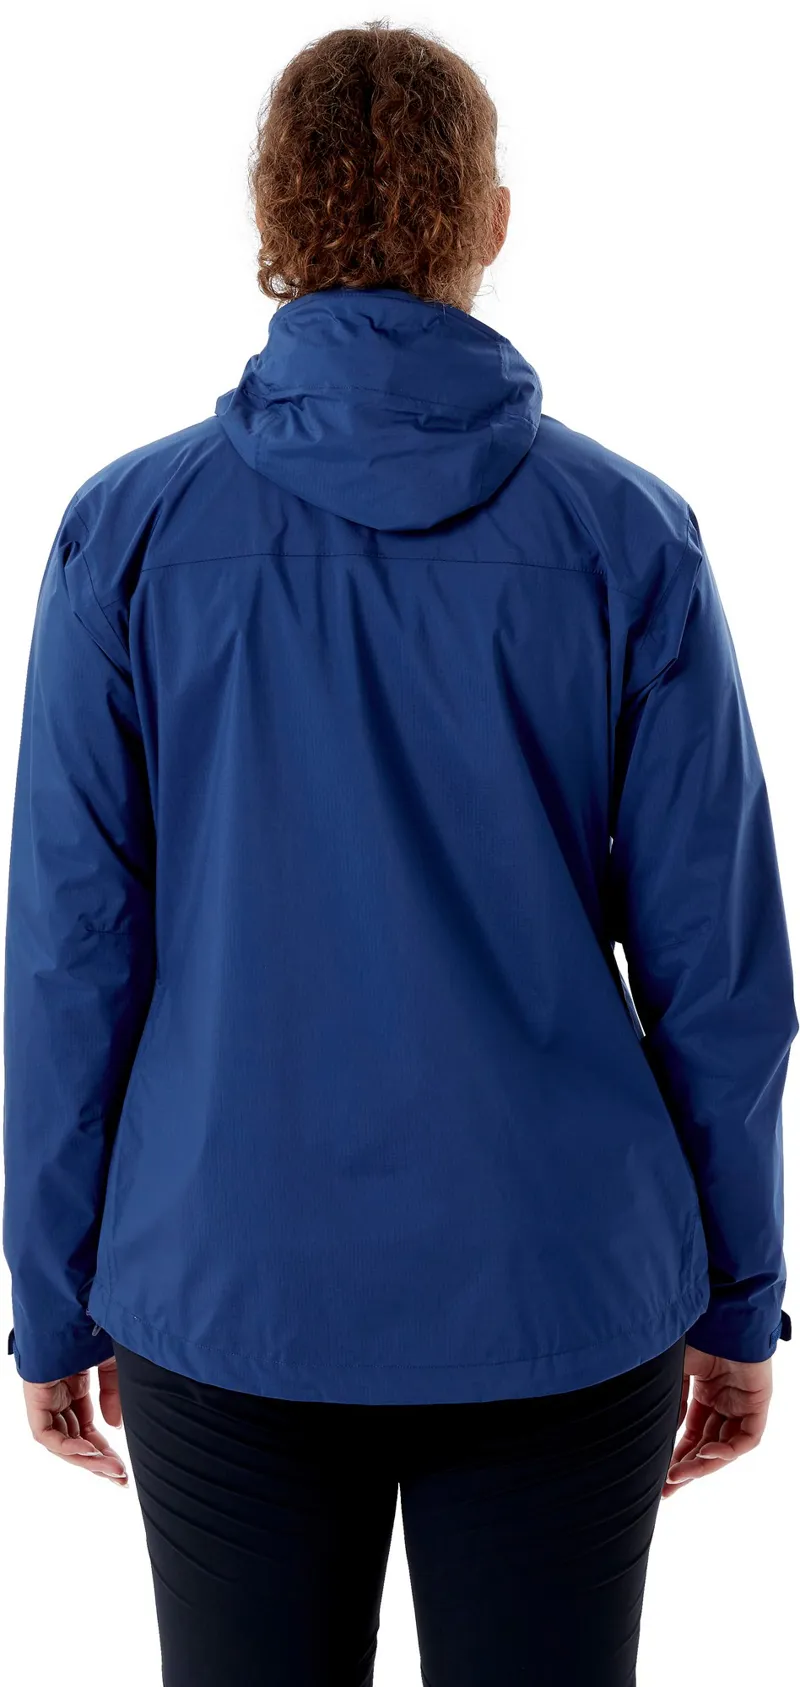 Rab Womens Downpour Plus 2.0 Jacket - Nightfall Blue